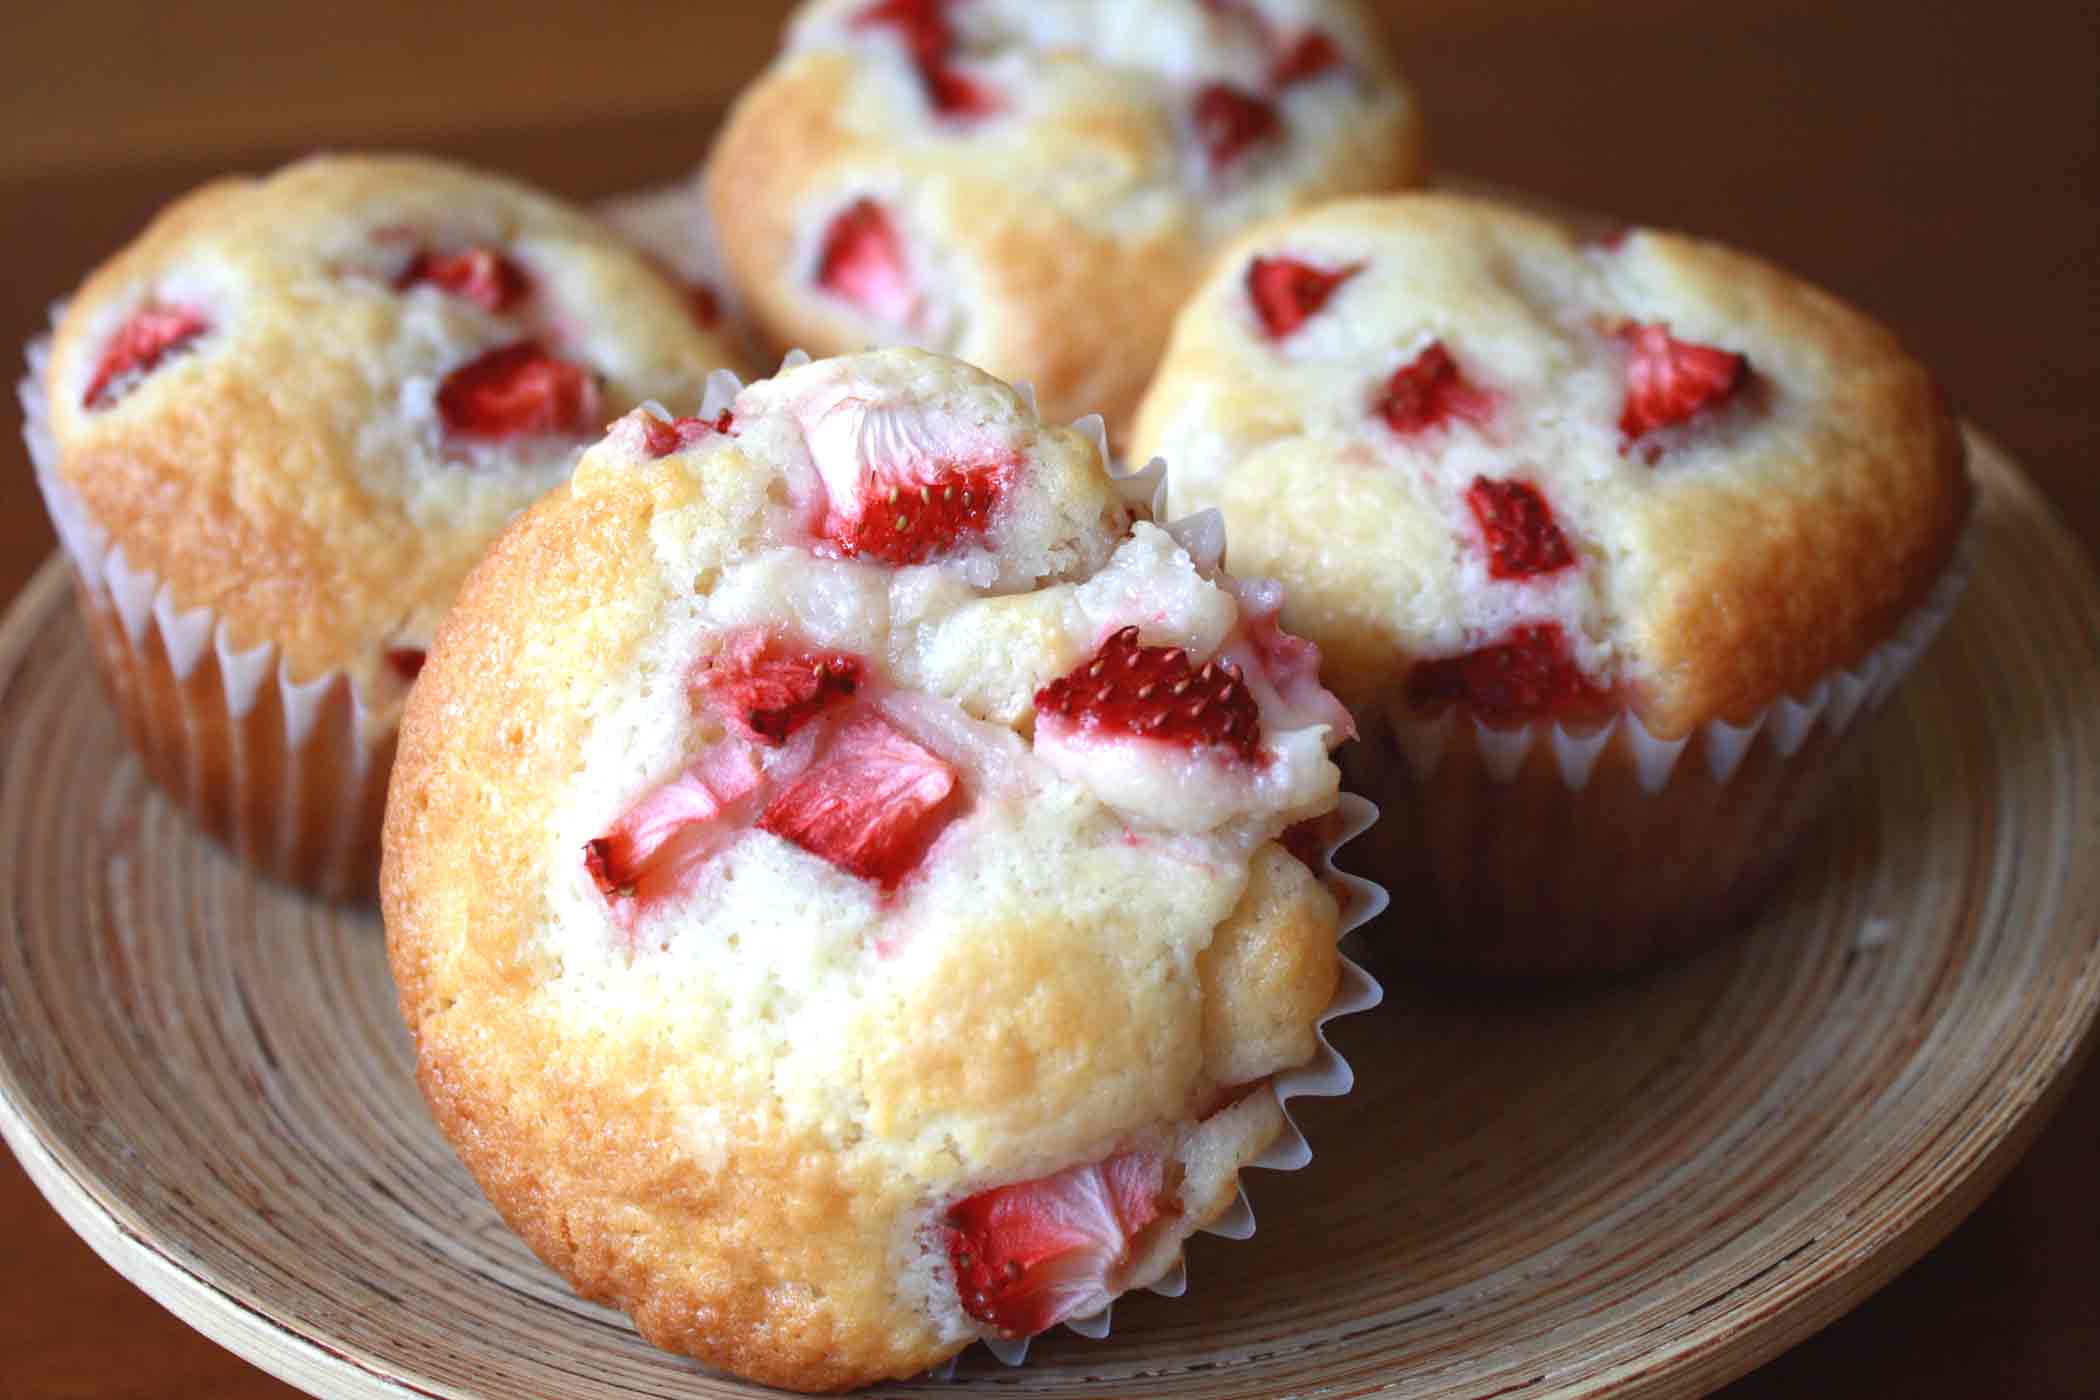 Strawberry-and-Cream-Cheese-Muffin.jpg